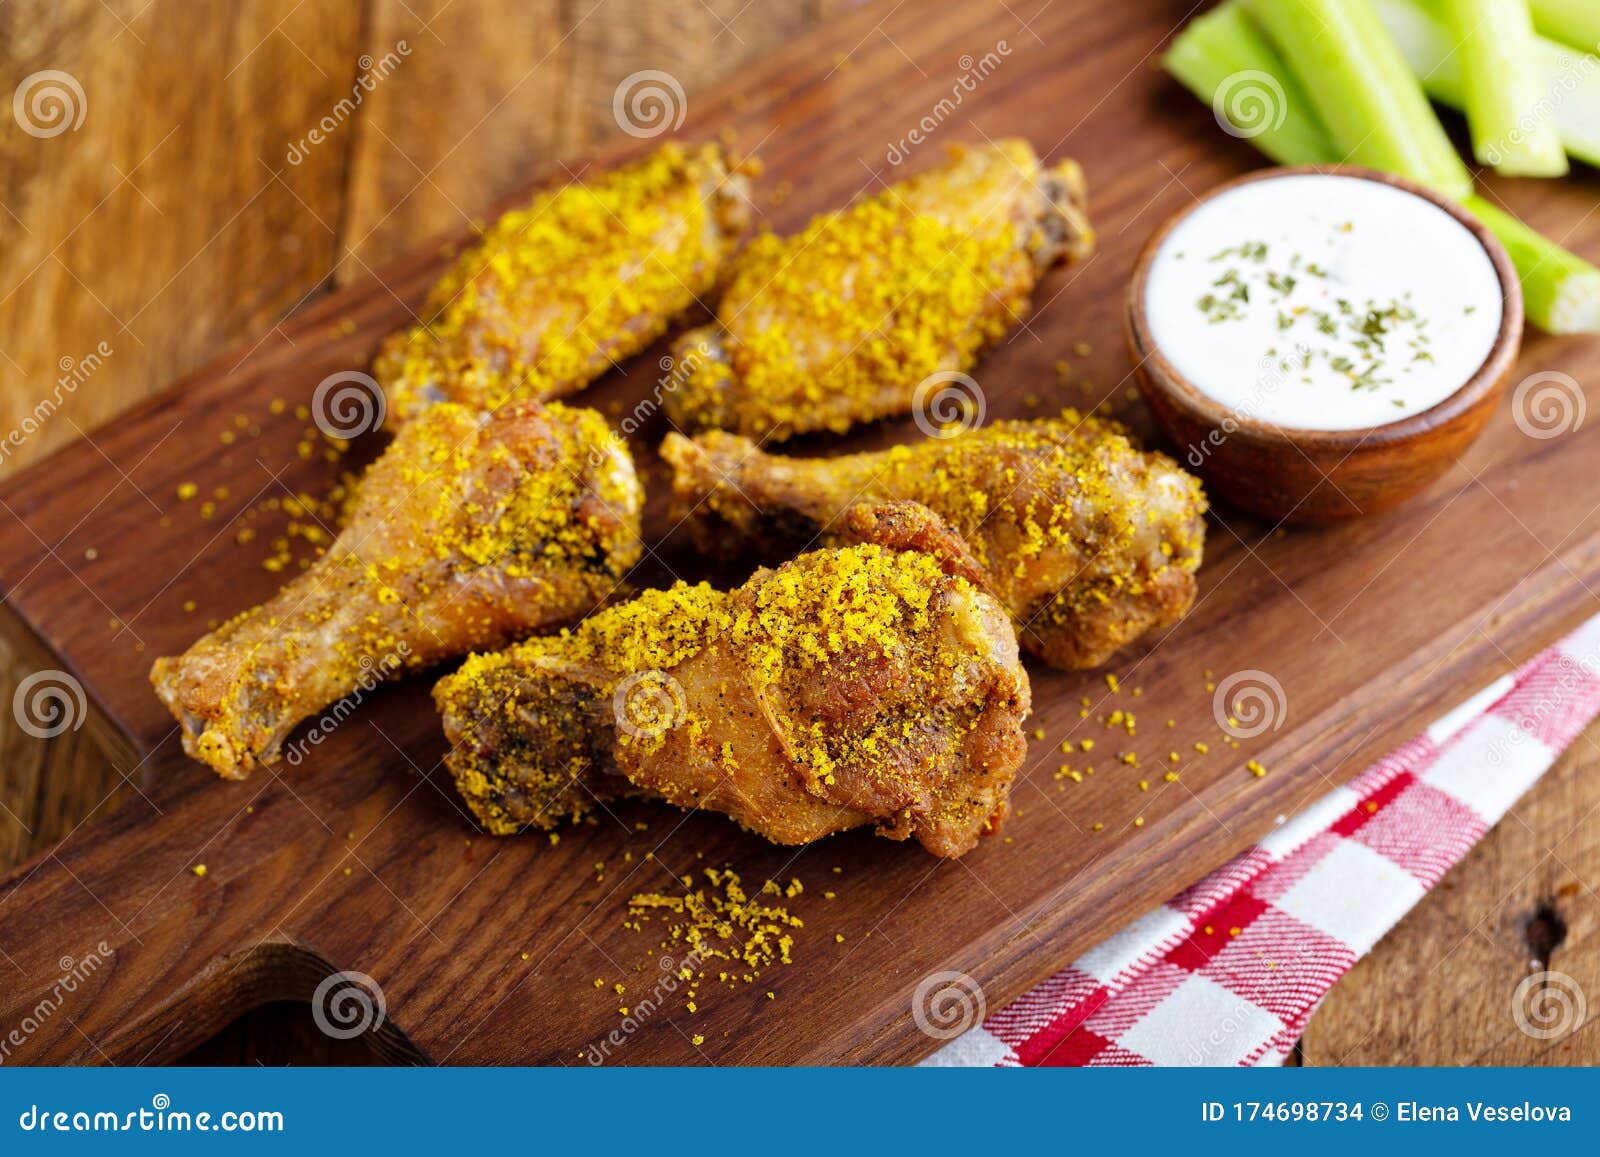 zesty lemon chicken wings